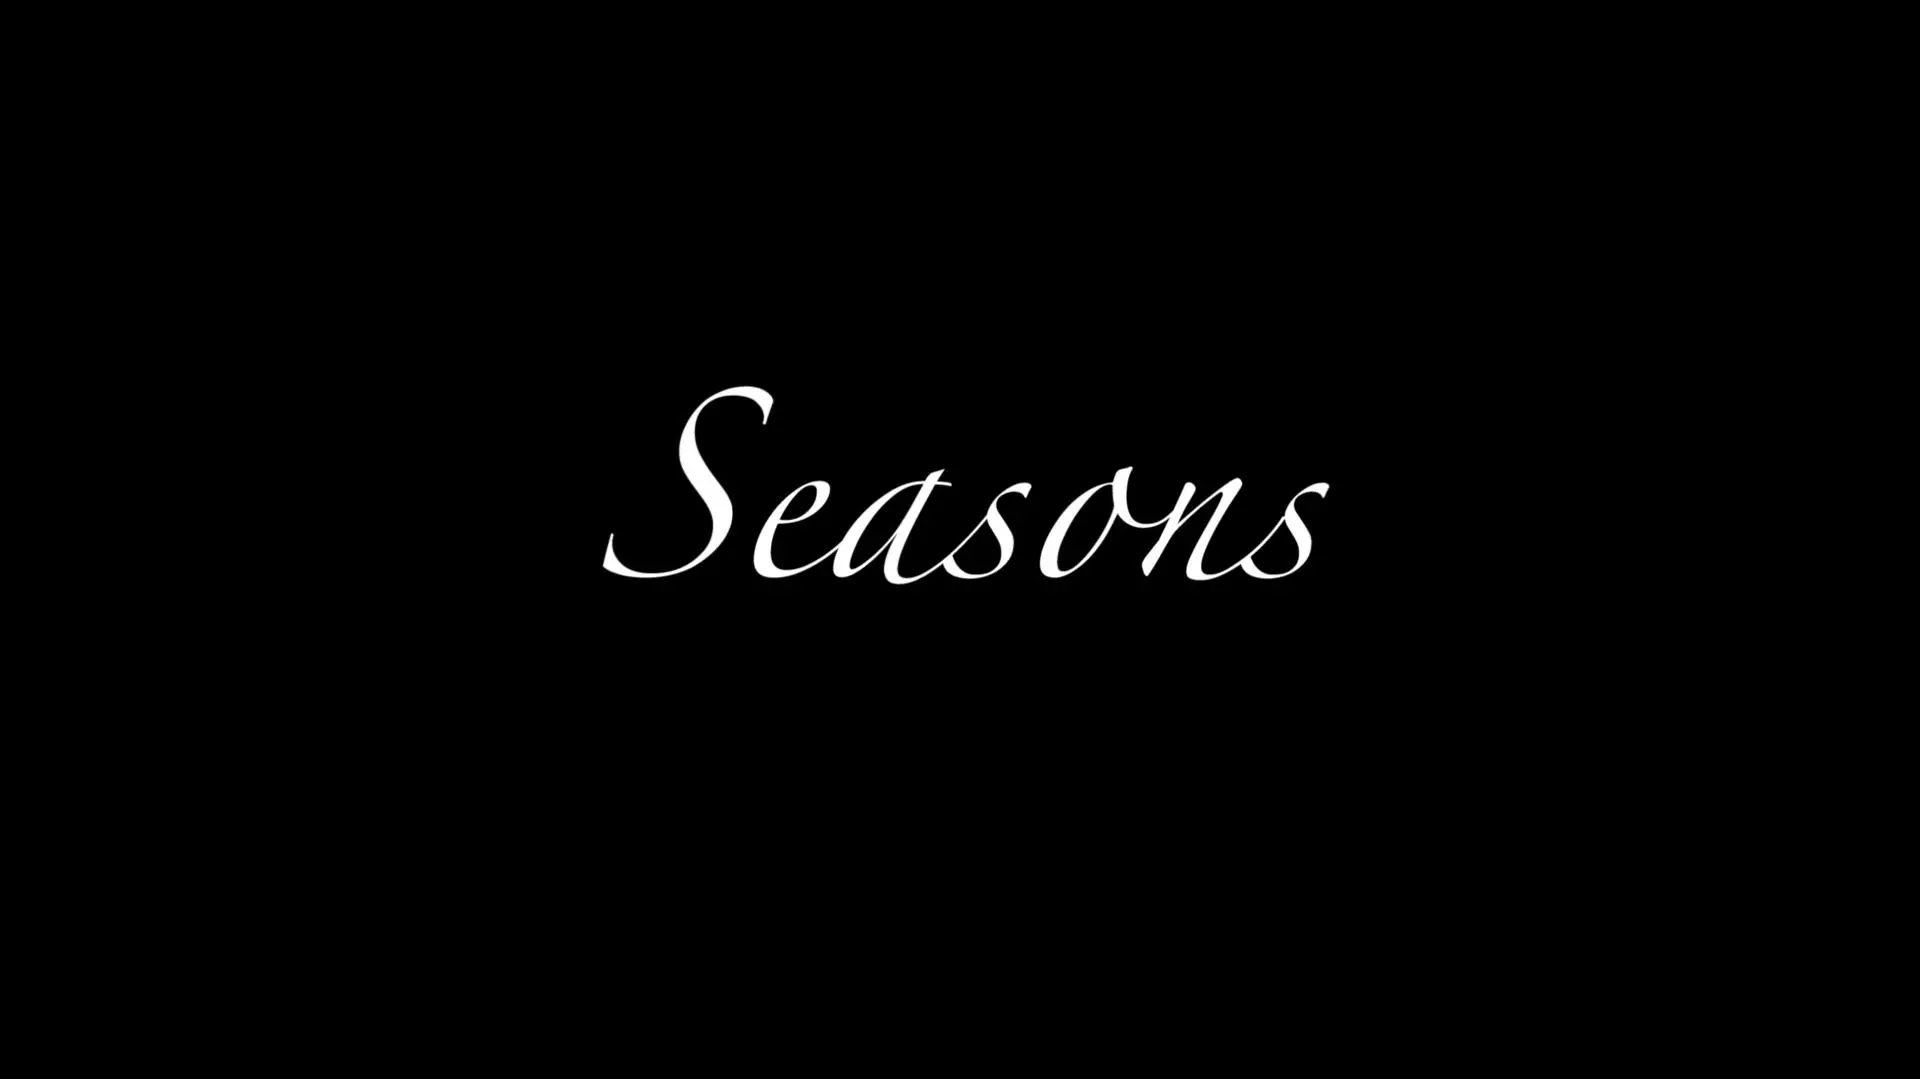 Seasons_peliplat